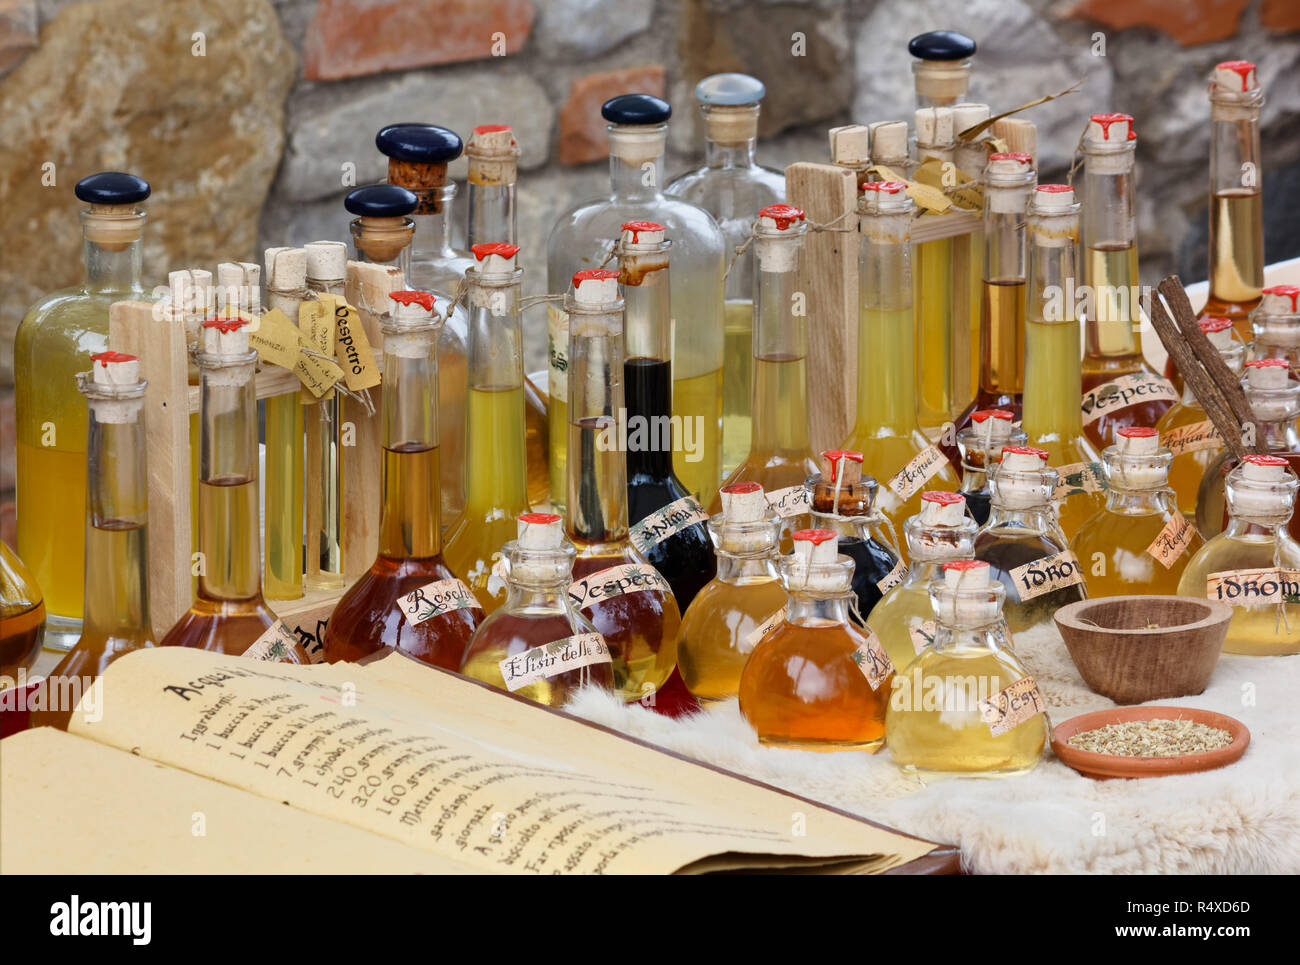 Bottiglie e brocche contenenti bevande realizzate con ricette tradizionali a un festival italiano Foto Stock